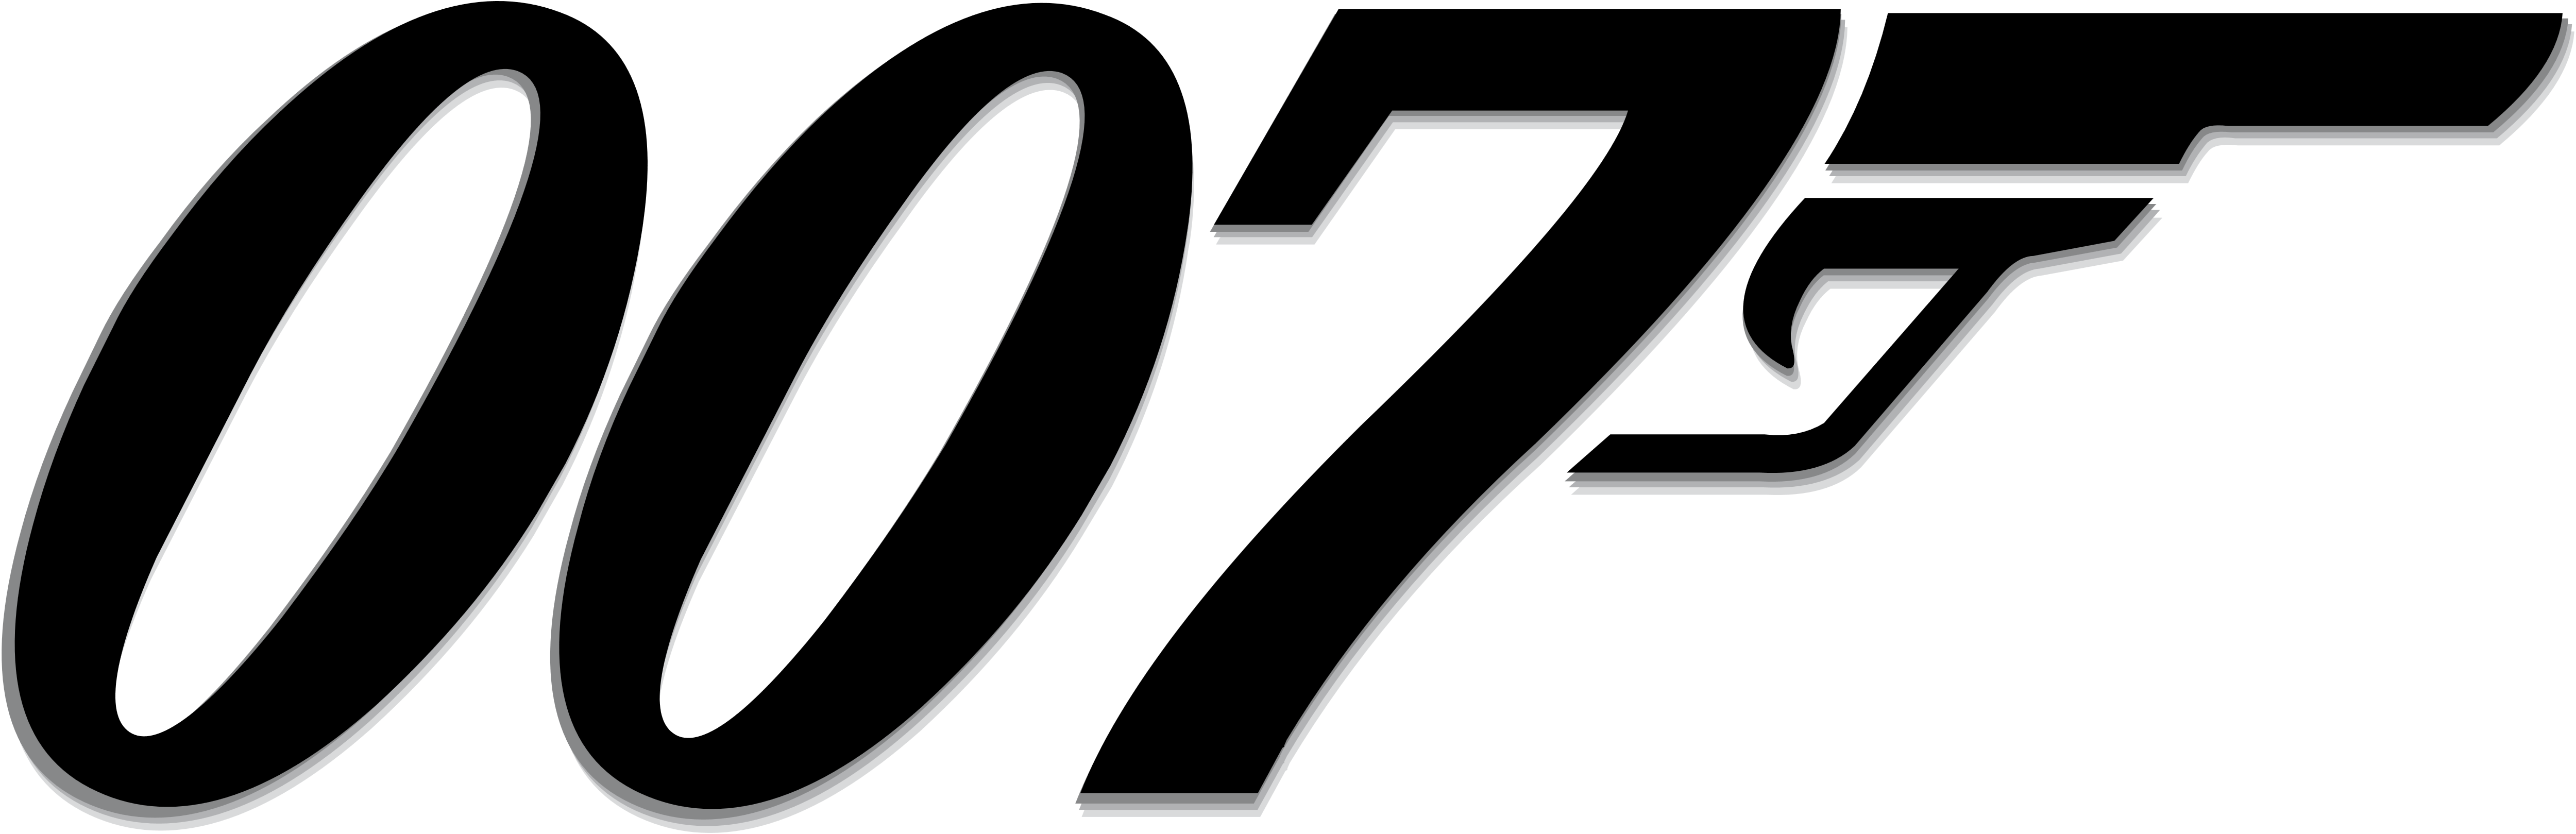 OO7 Logo - LogoDix